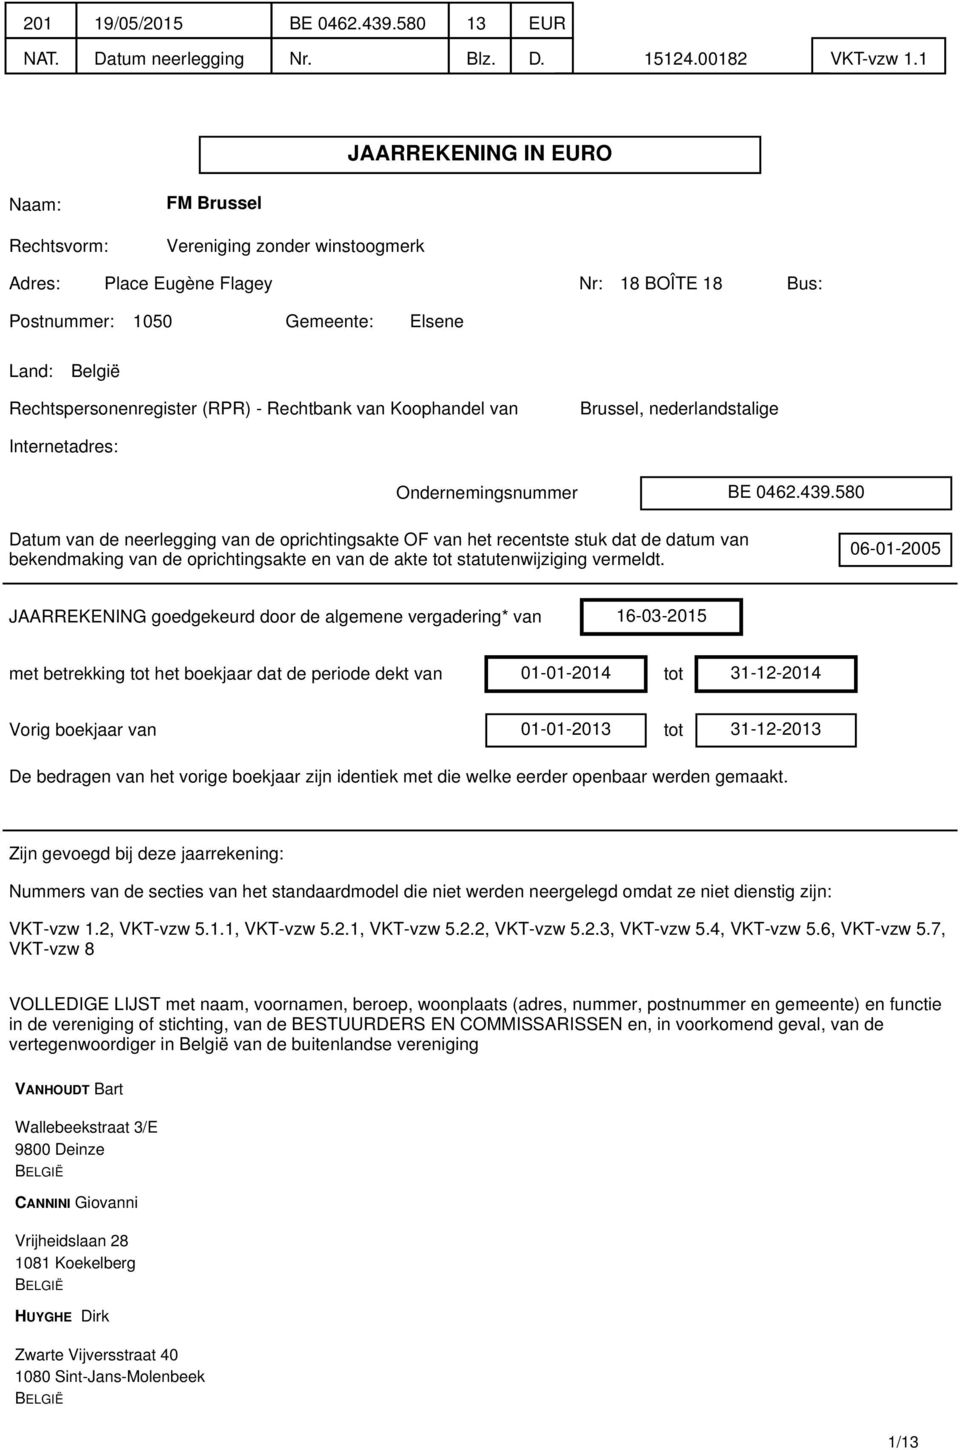 Rechtspersonenregister (RPR) - Rechtbank van Koophandel van Brussel, nederlandstalige Internetadres: Ondernemingsnummer BE 0462.439.